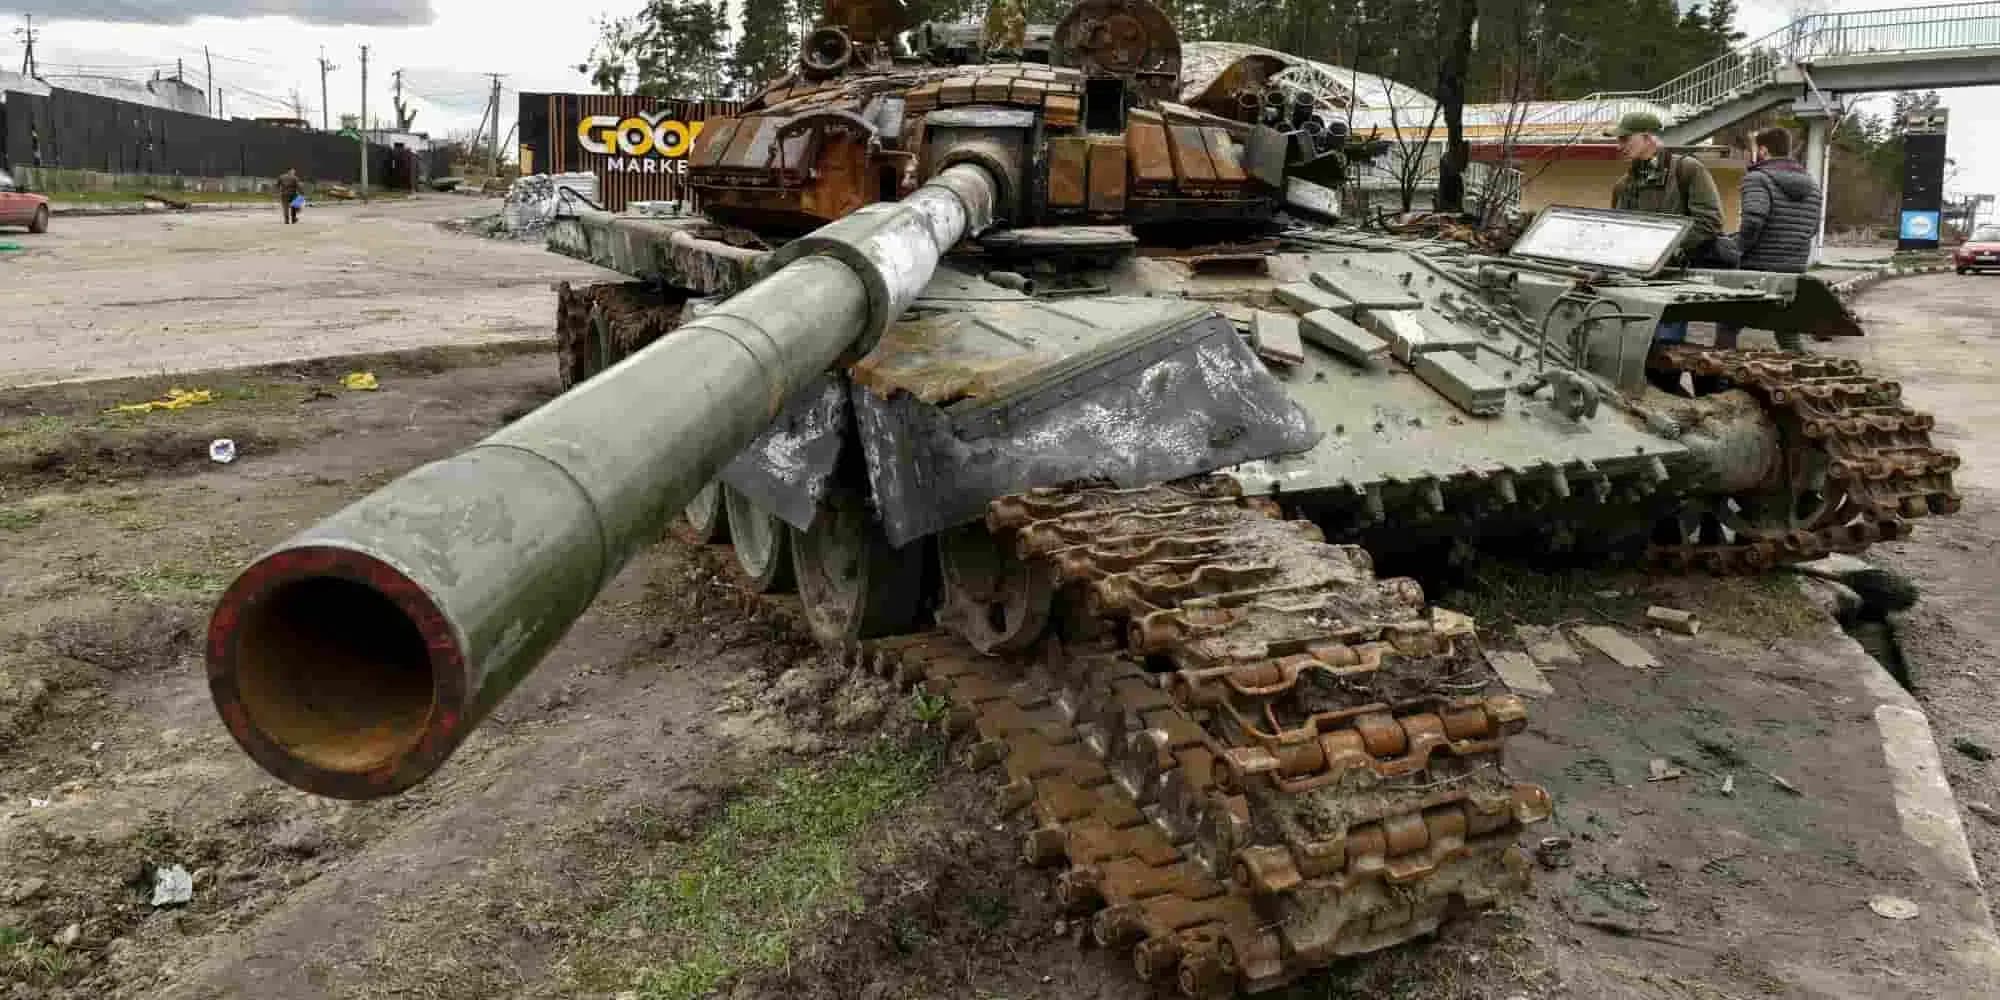 oukrania polemos tanks 11 4 2022